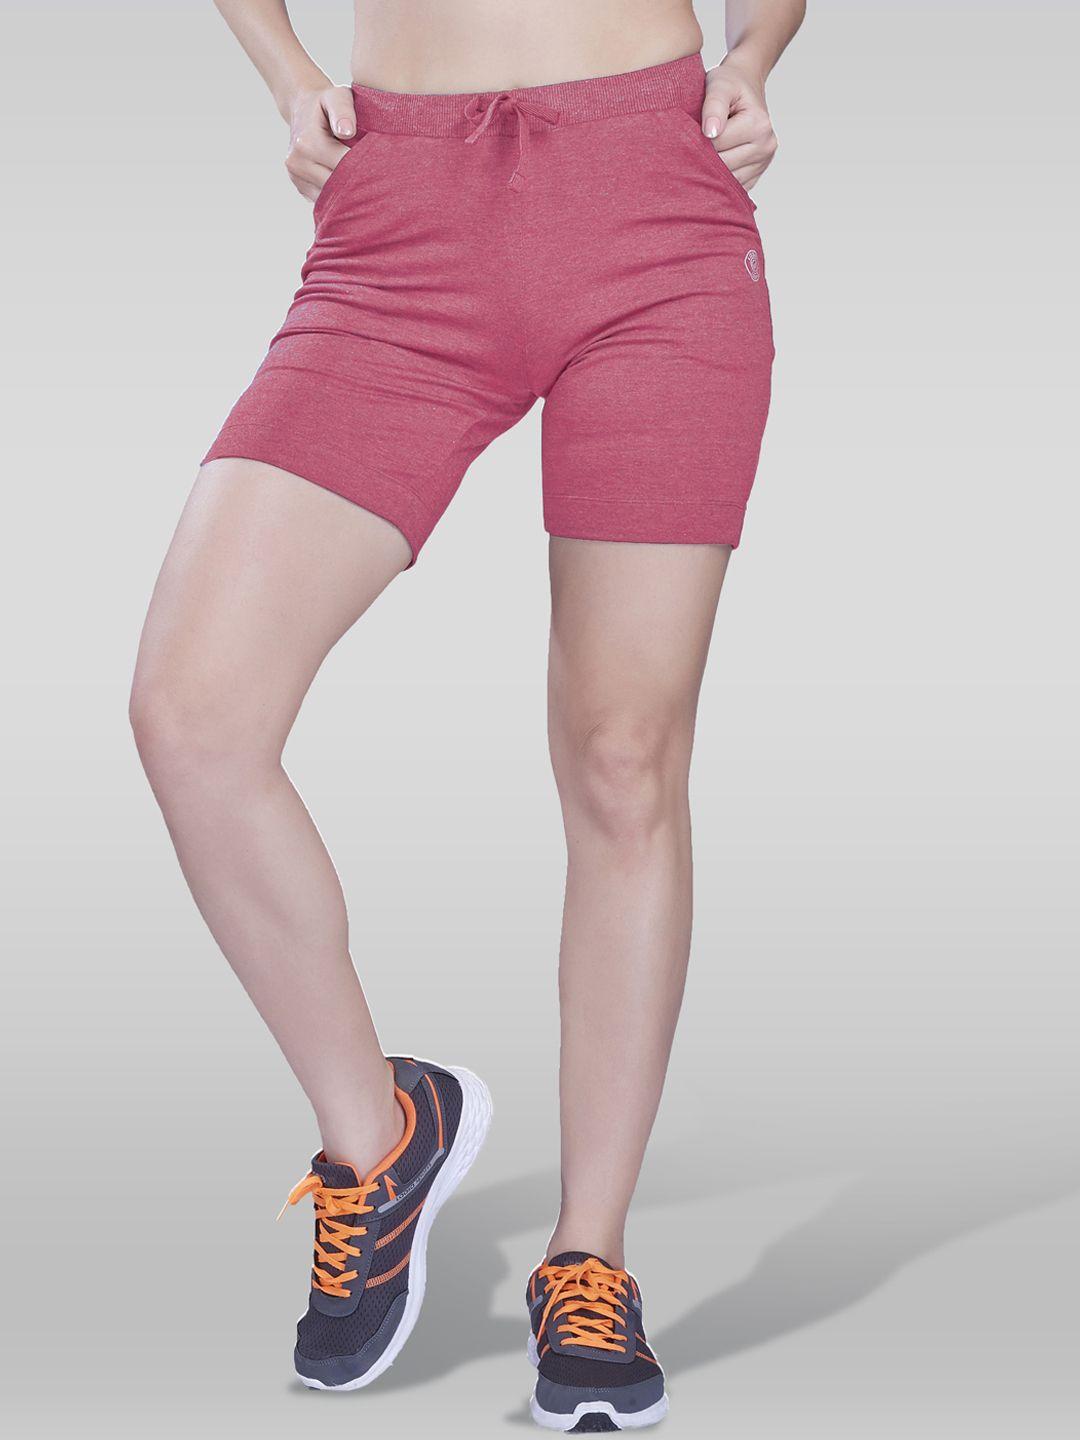 laasa  sports women slim fit mid rise dri-fit cotton sports shorts